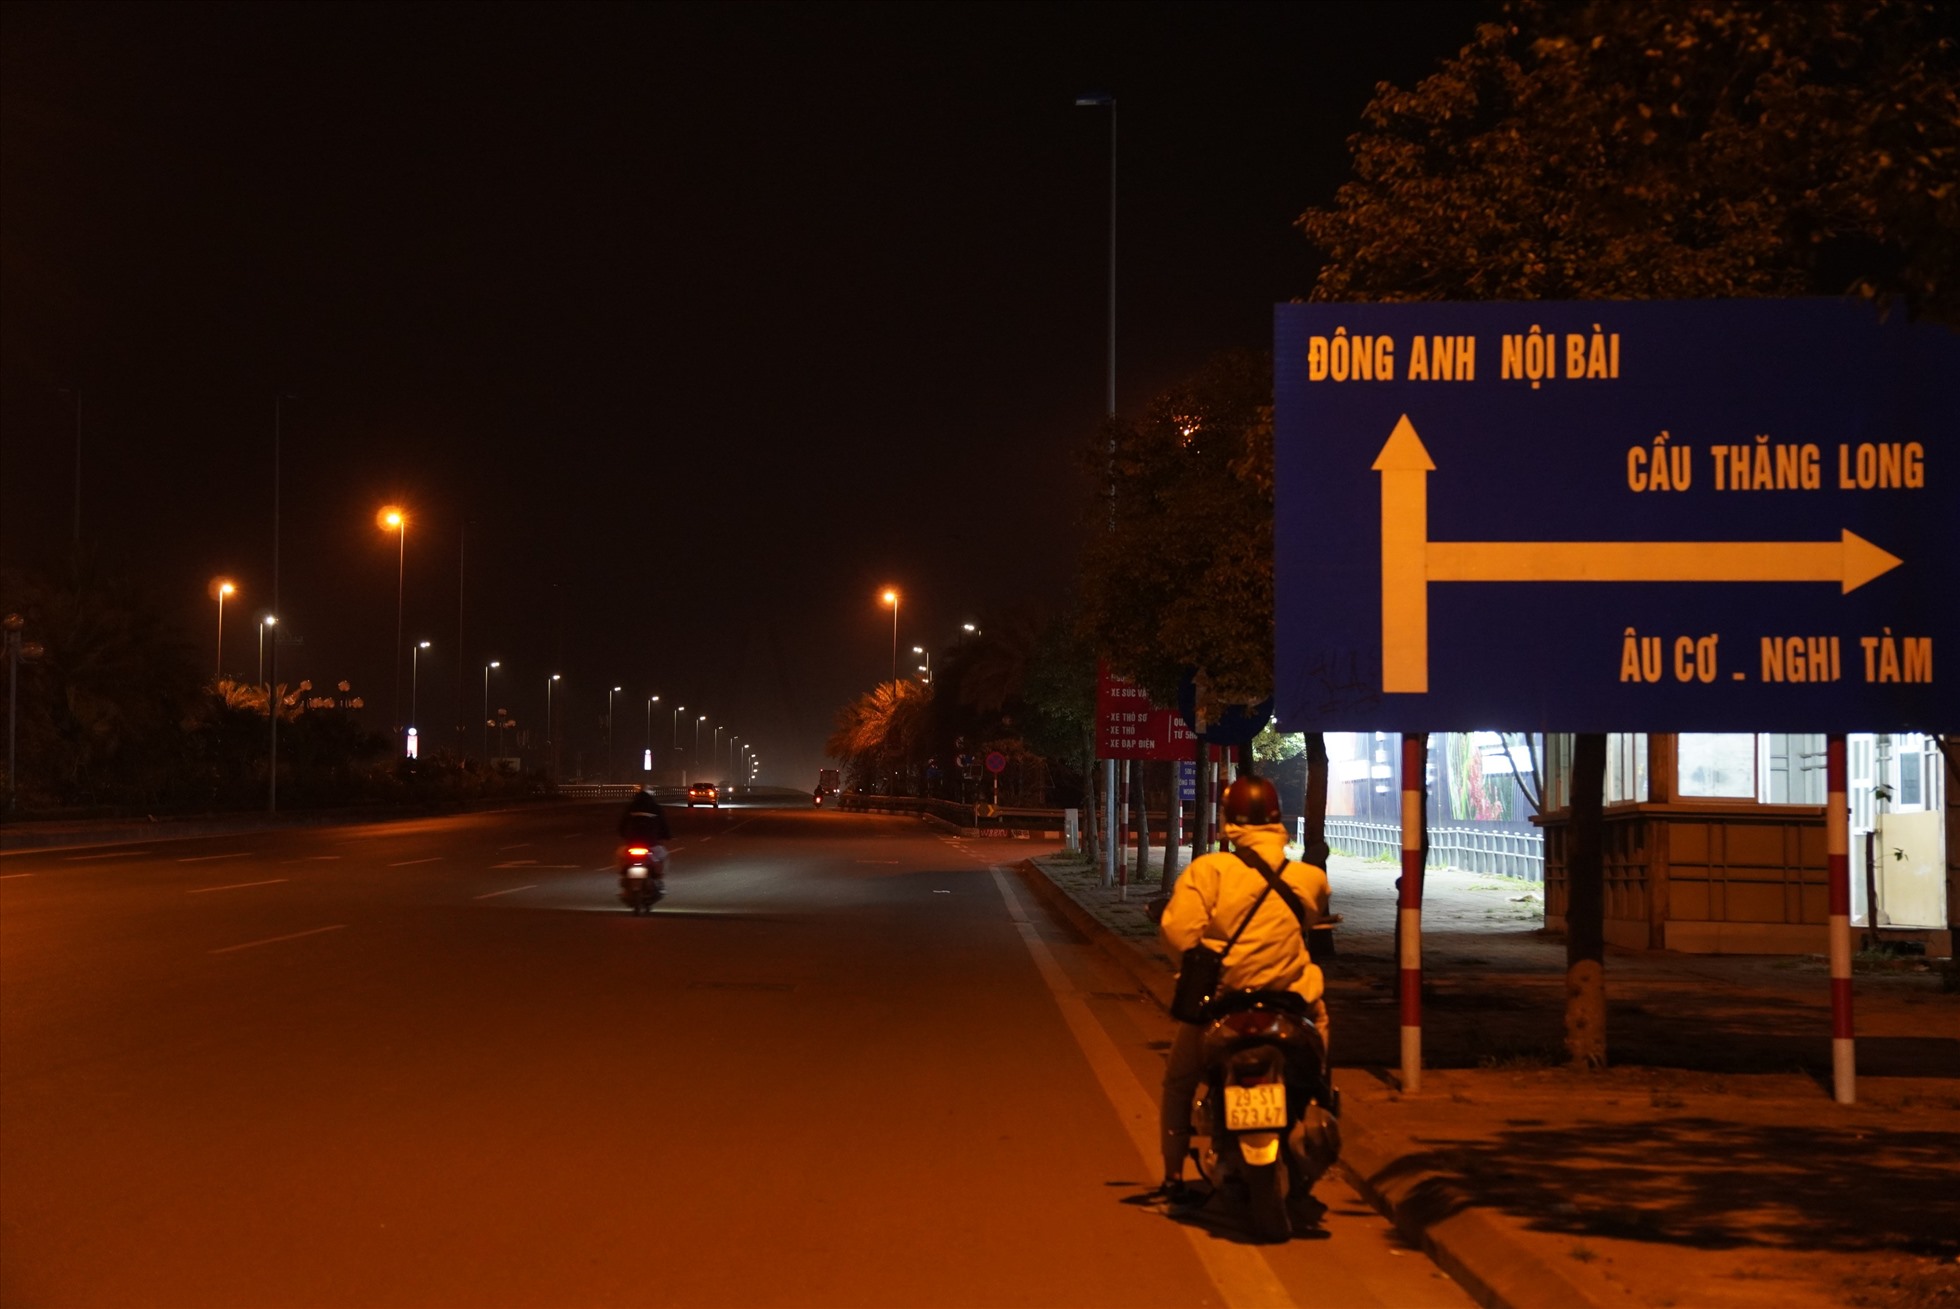 Hà Nội chưa cấm xe qua cầu Nhật Tân theo giờ để kiểm định cầu. Ảnh: Phạm Đông